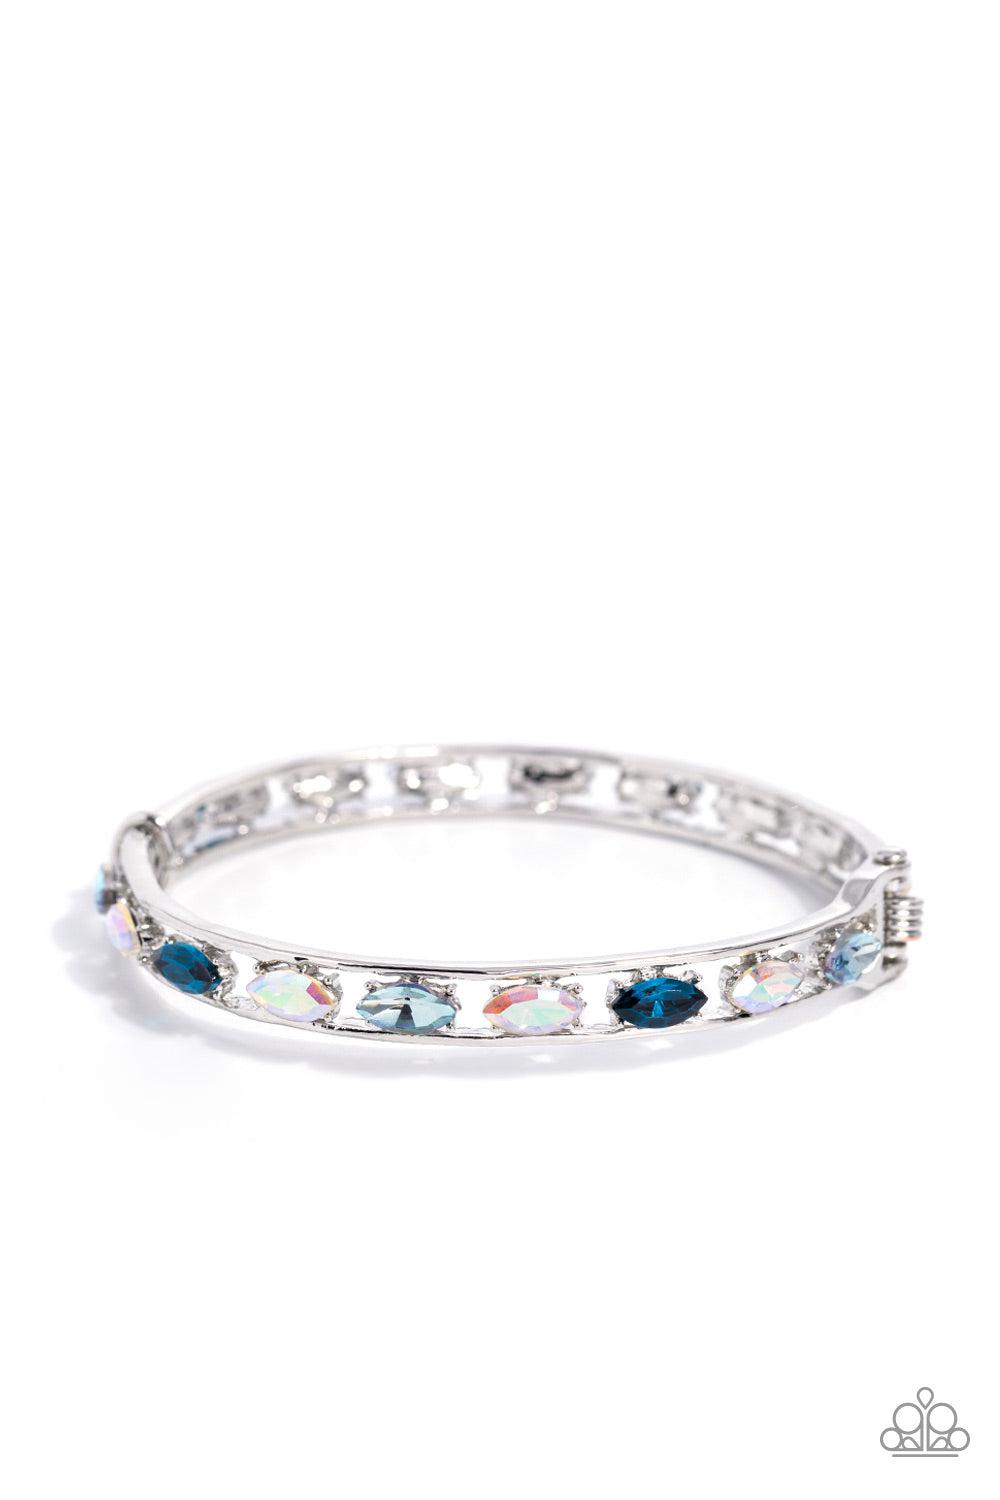 The Gem Genie Blue Rhinestone Bracelet - Paparazzi Accessories- lightbox - CarasShop.com - $5 Jewelry by Cara Jewels